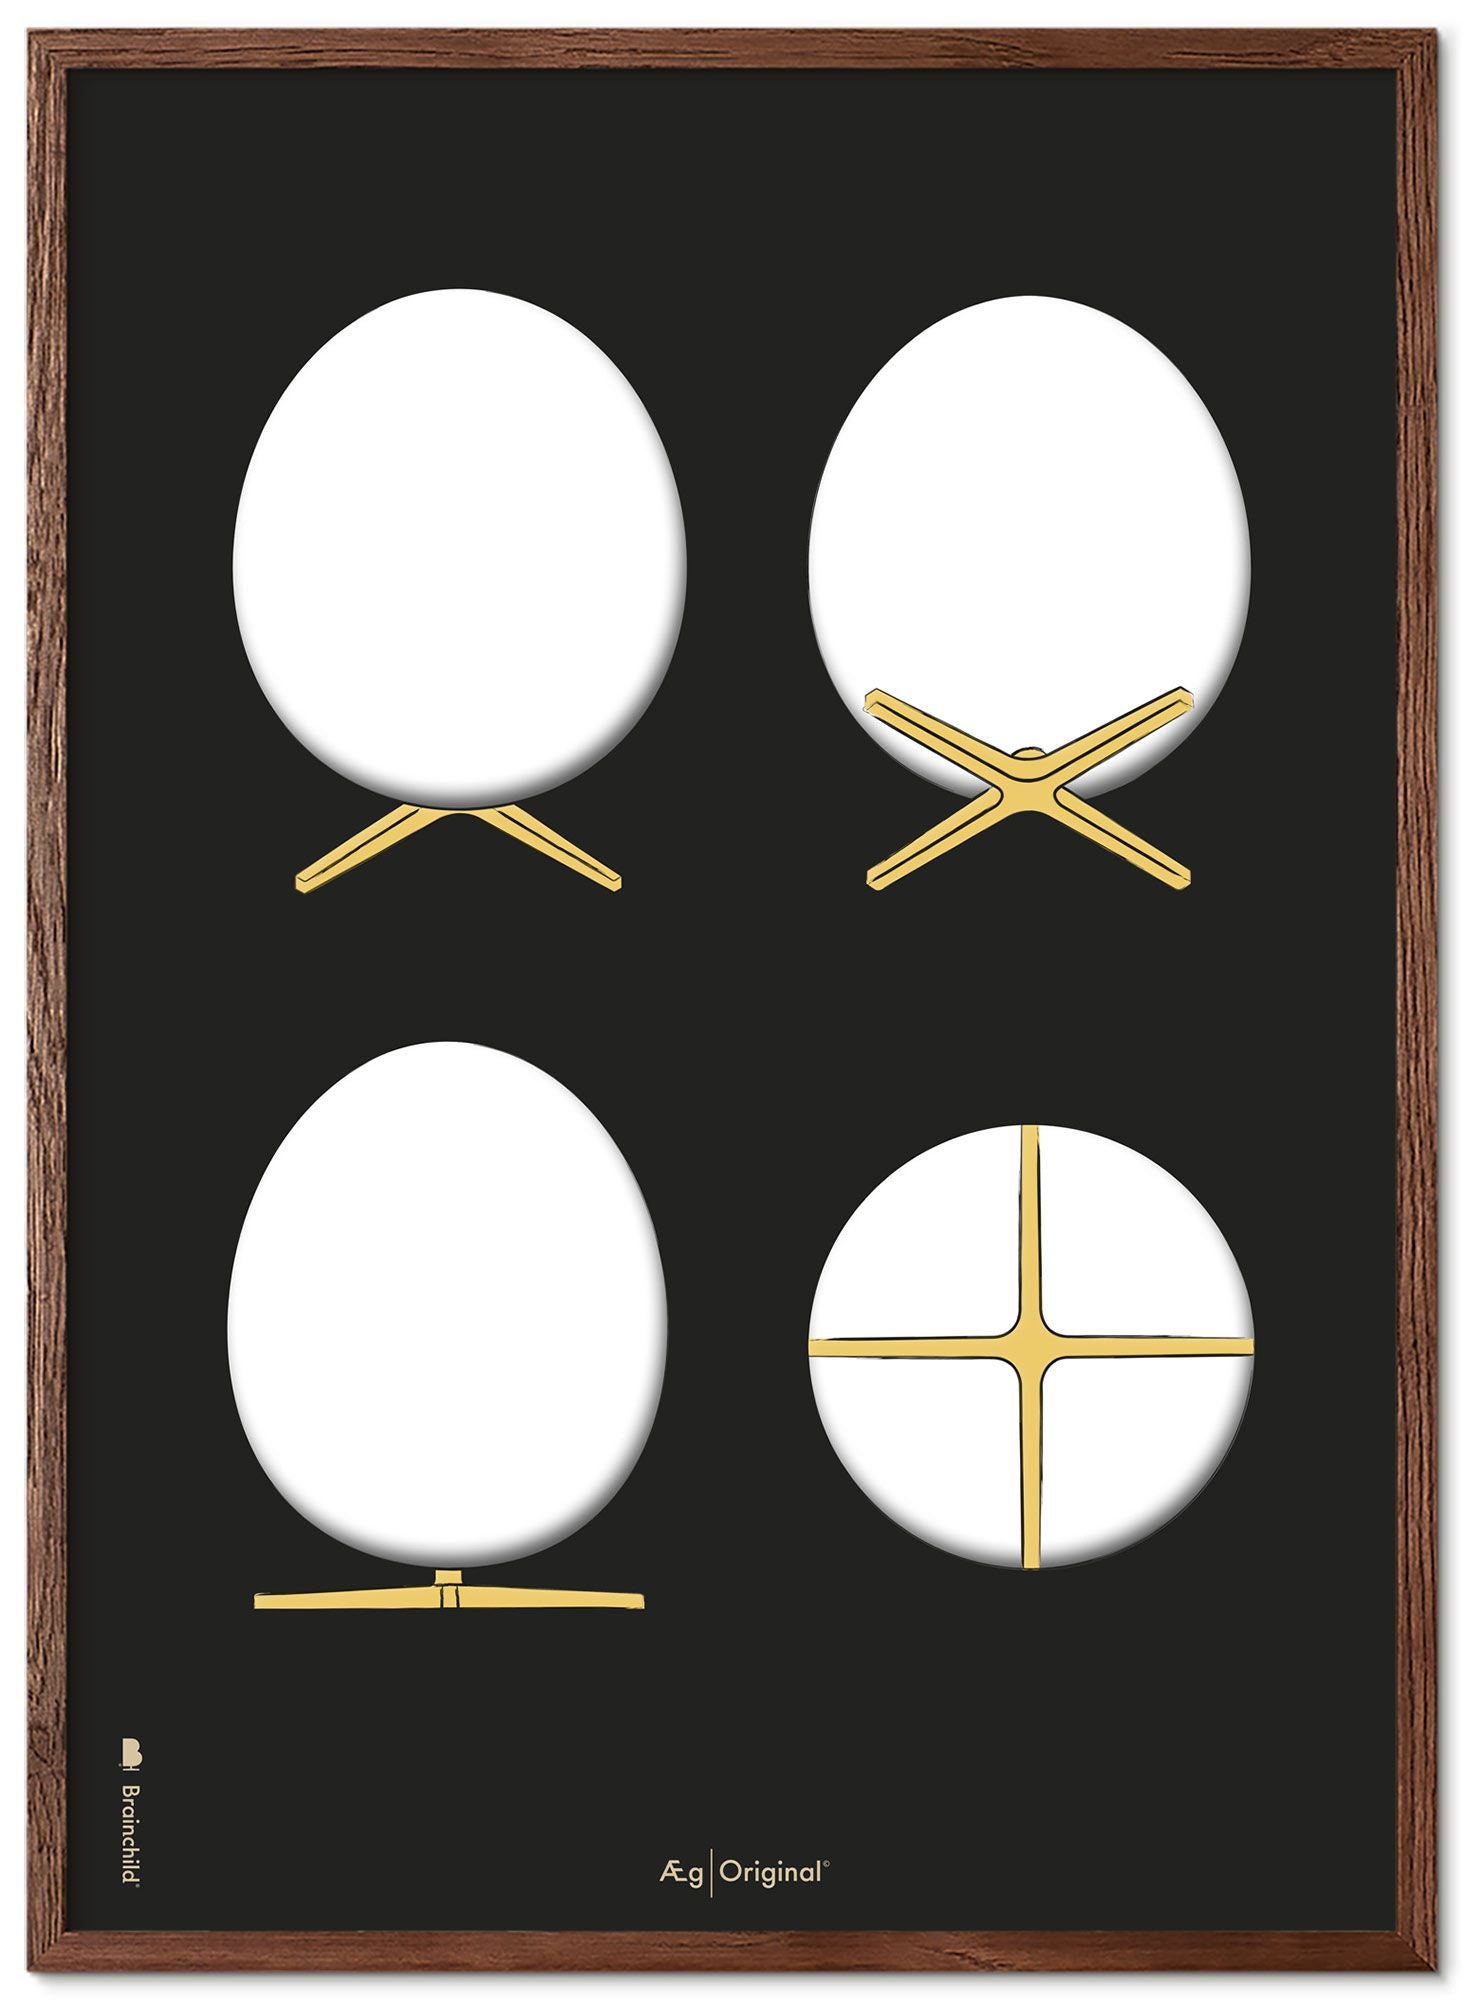 Prepare el marco de póster de bocetos de diseño de huevo hecho de madera oscura 50x70 cm, fondo negro